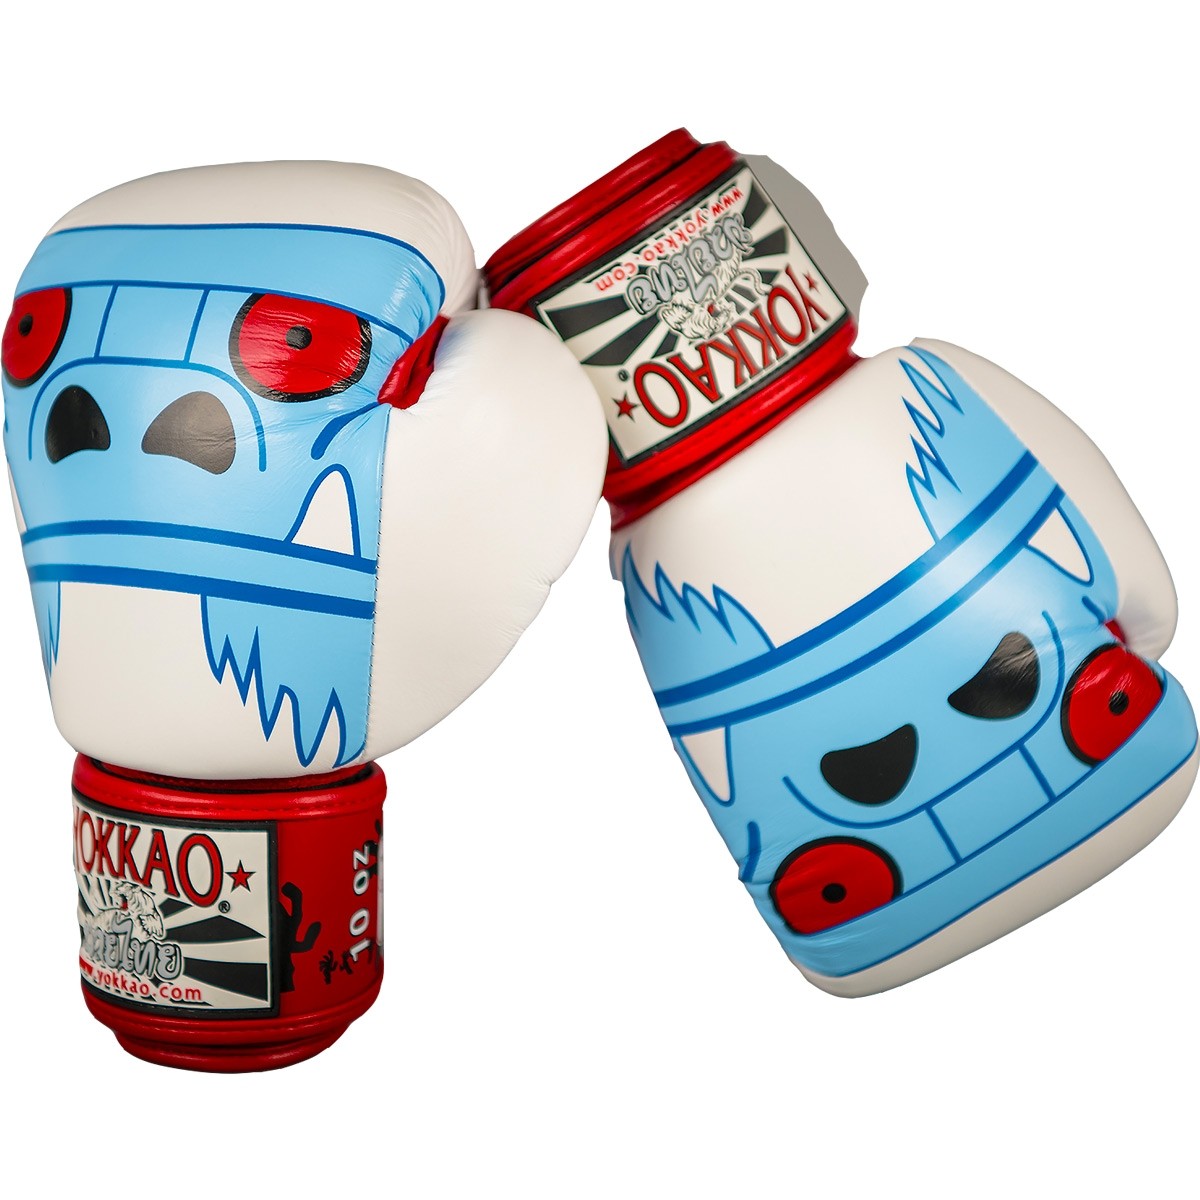 นวมชกมวย ไทย-สากล หนังแท้ Yokkao Monster Muay Thai Boxing Gloves